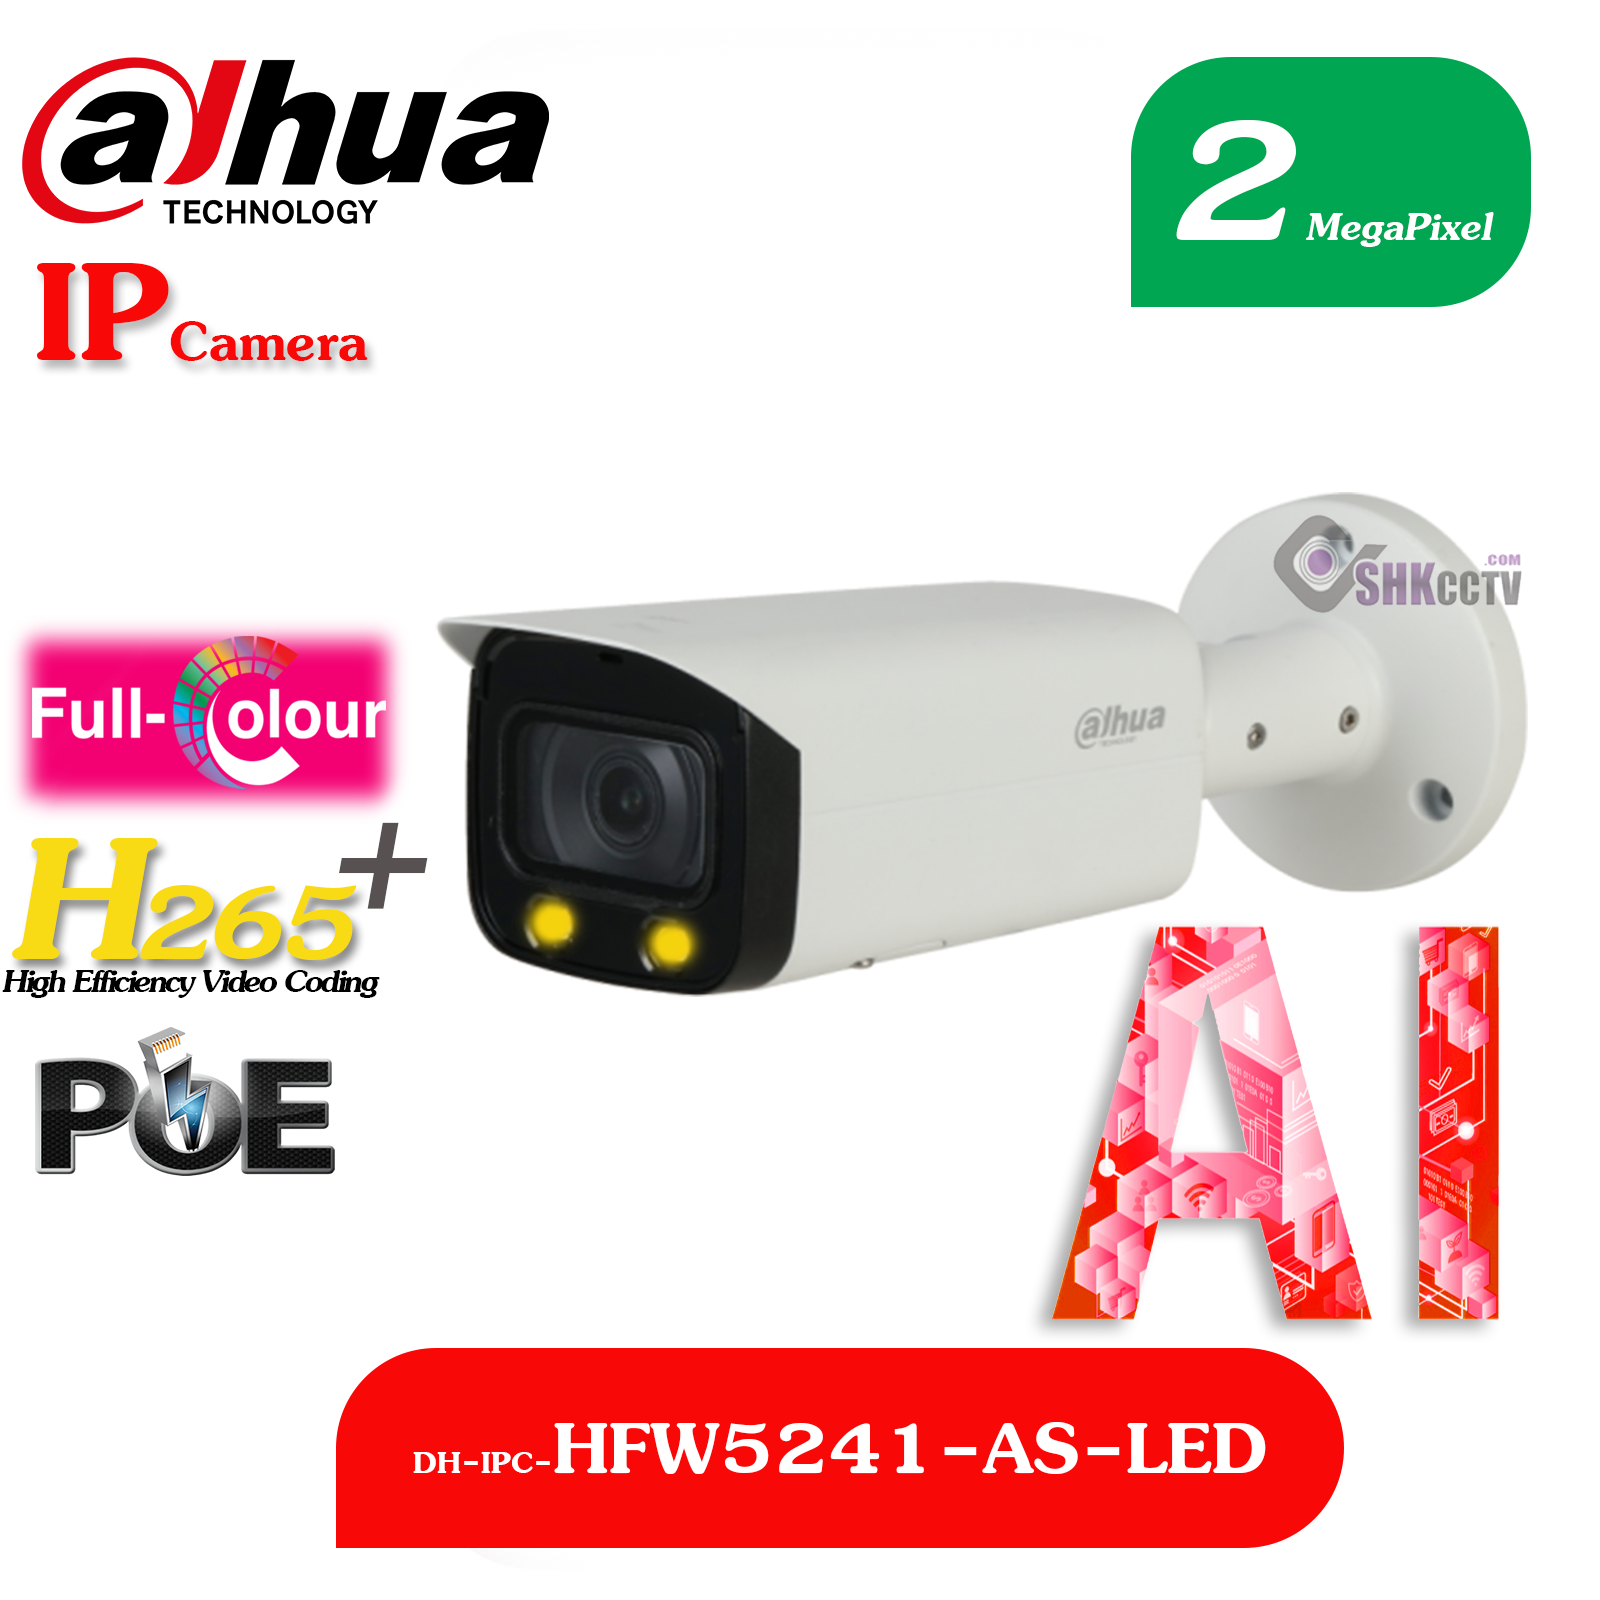 DH-IPC-HFW5241-AS-LED DAHUA داهوا